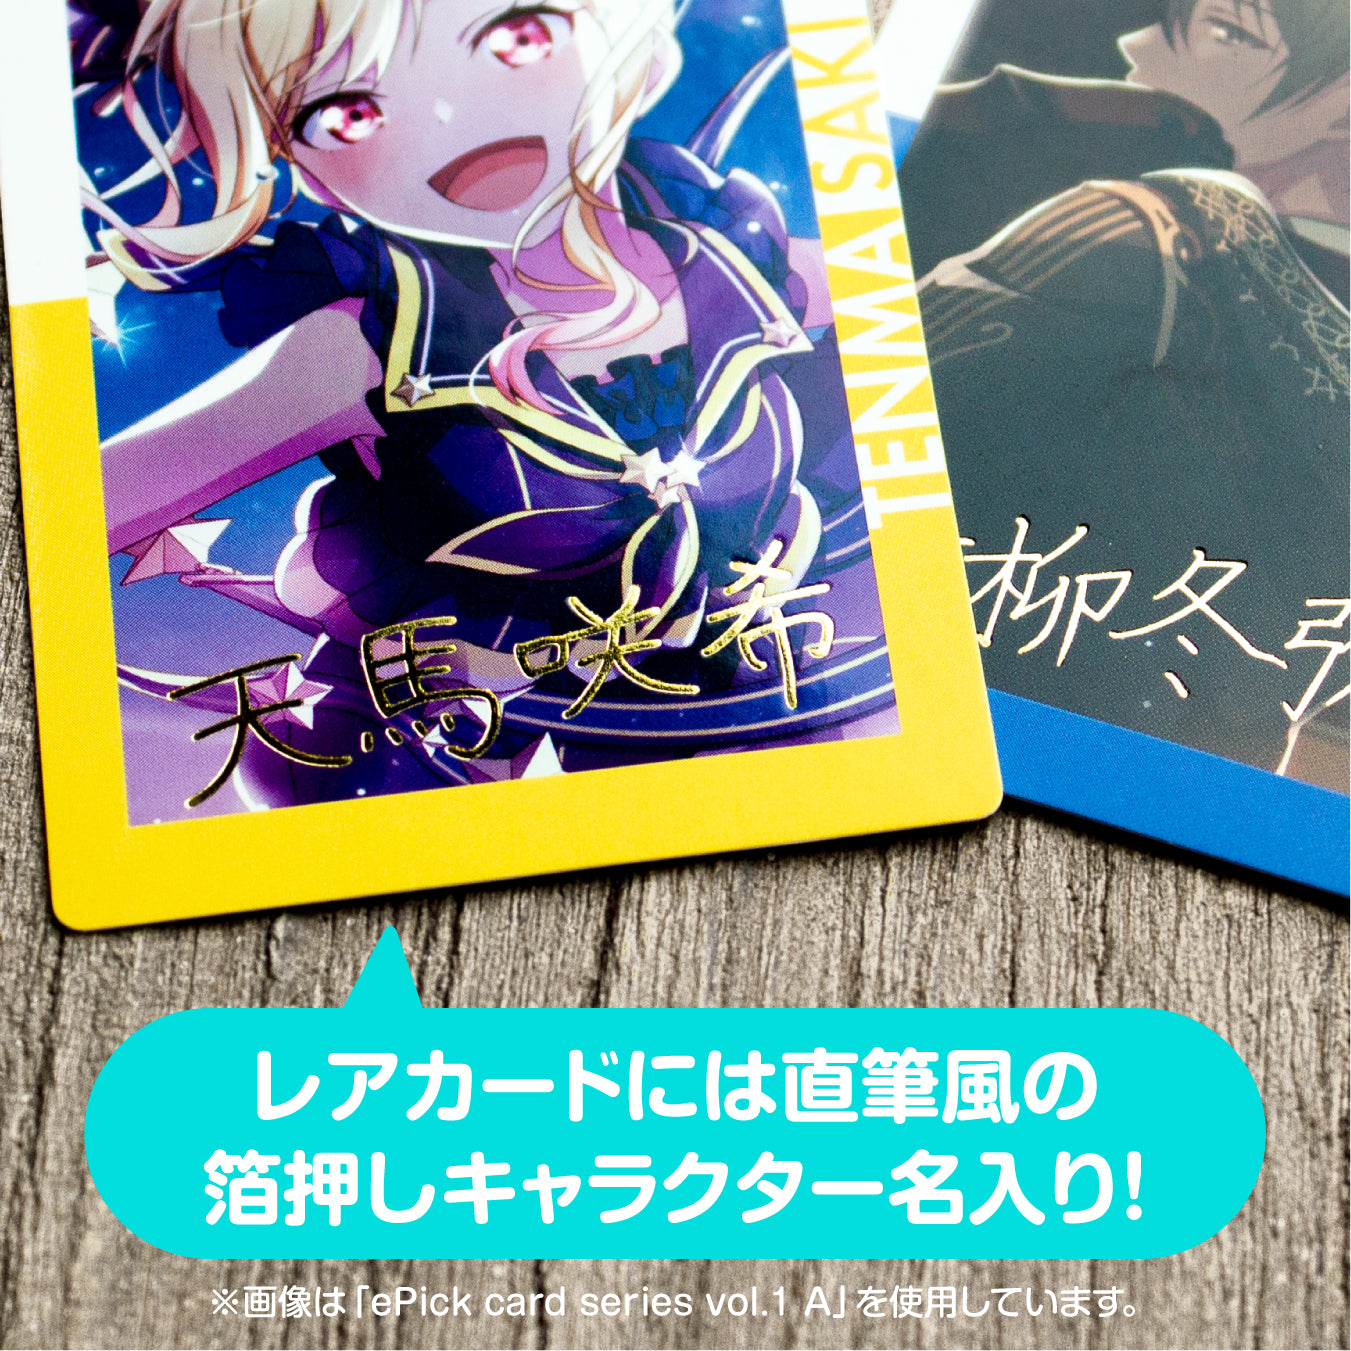 【予約商品】ePick card series vol.1 B BOX 特典付き［天馬 司］